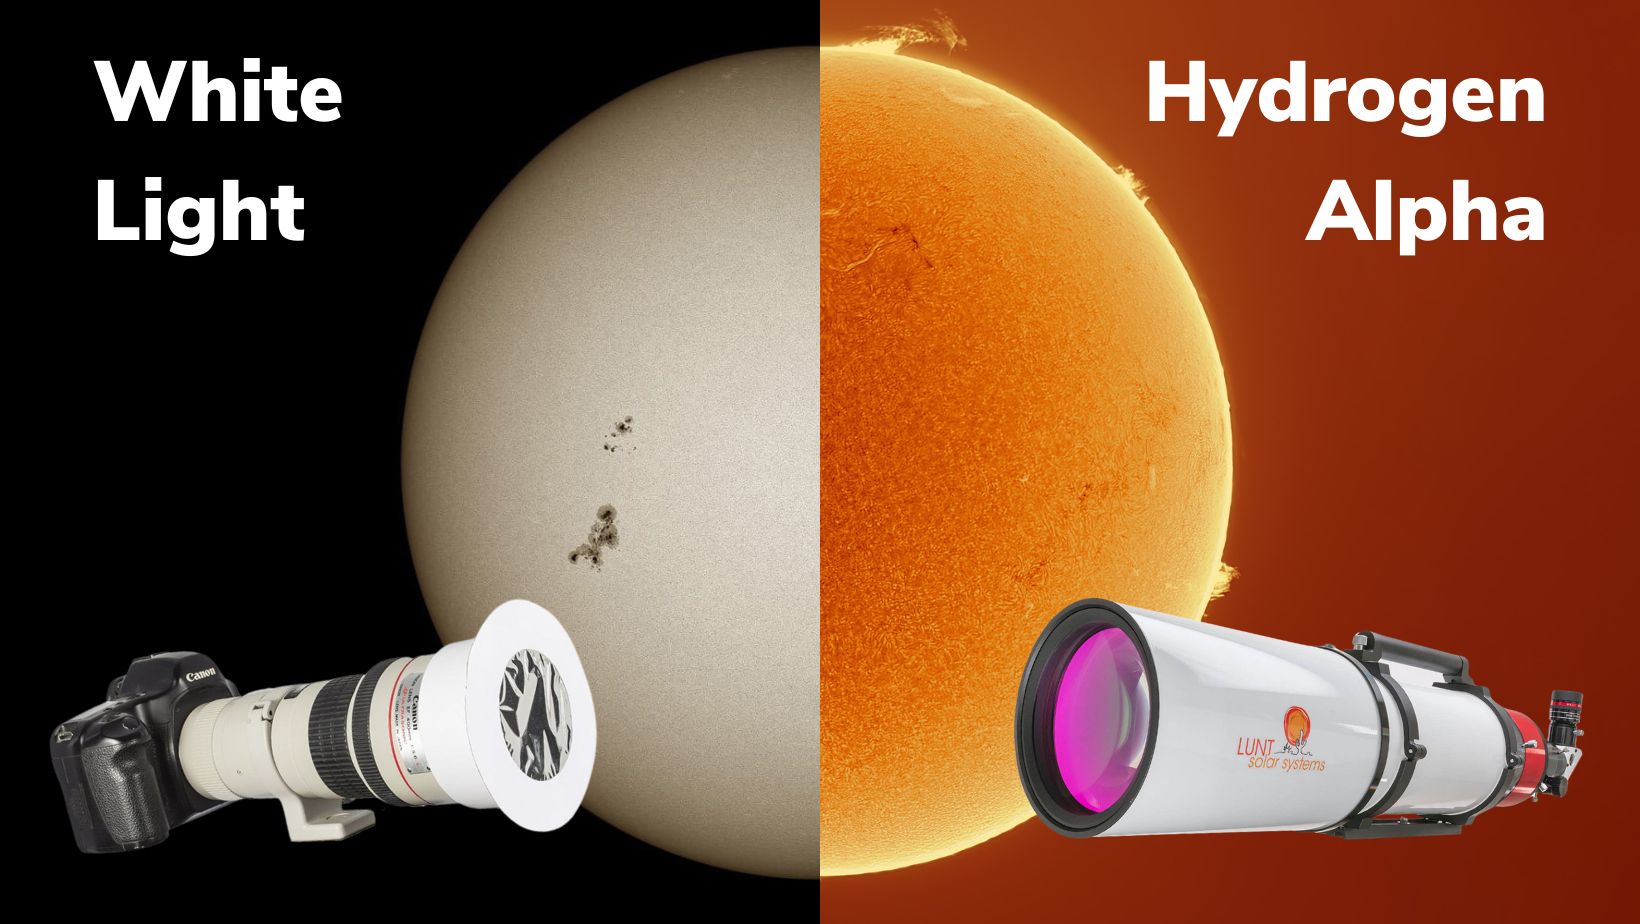 Types of Solar Telescopes: White Light vs Hydrogen Alpha